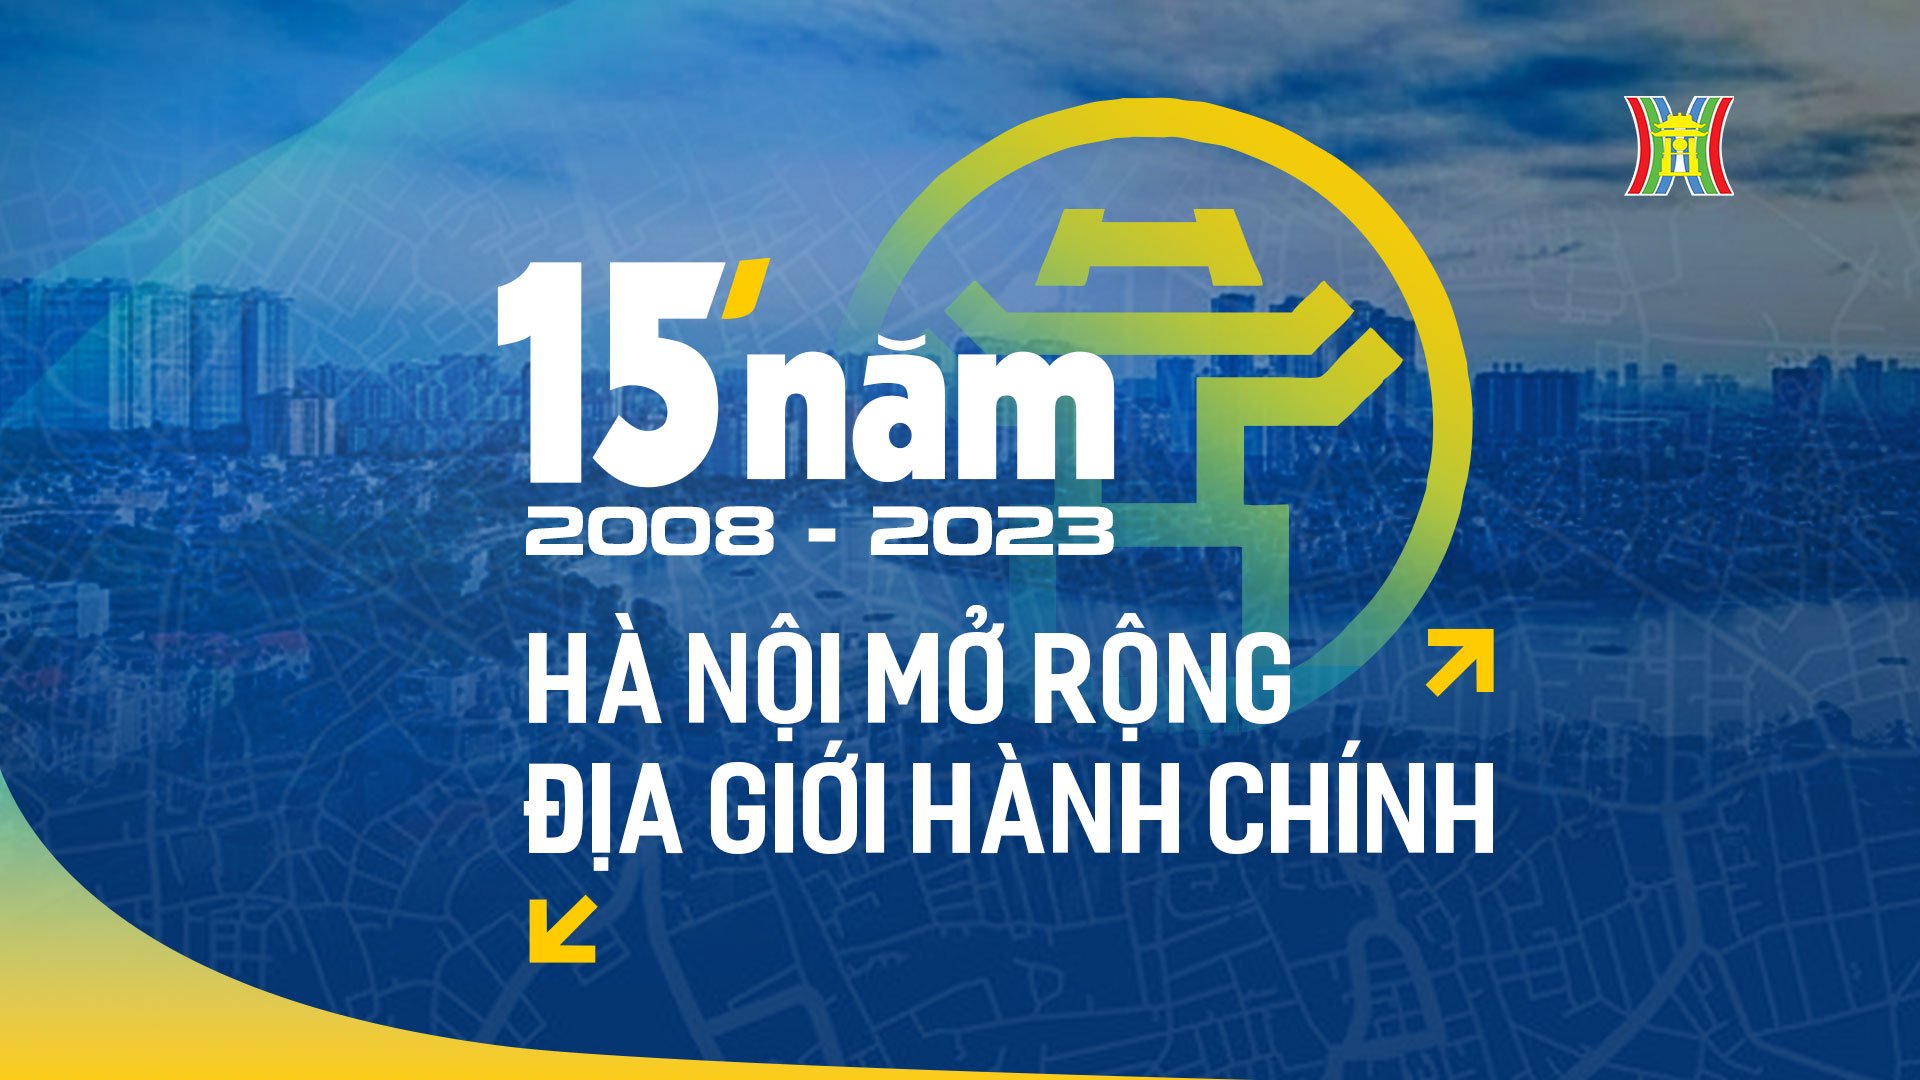 15 năm Hà Nội mở rộng địa giới hành chính